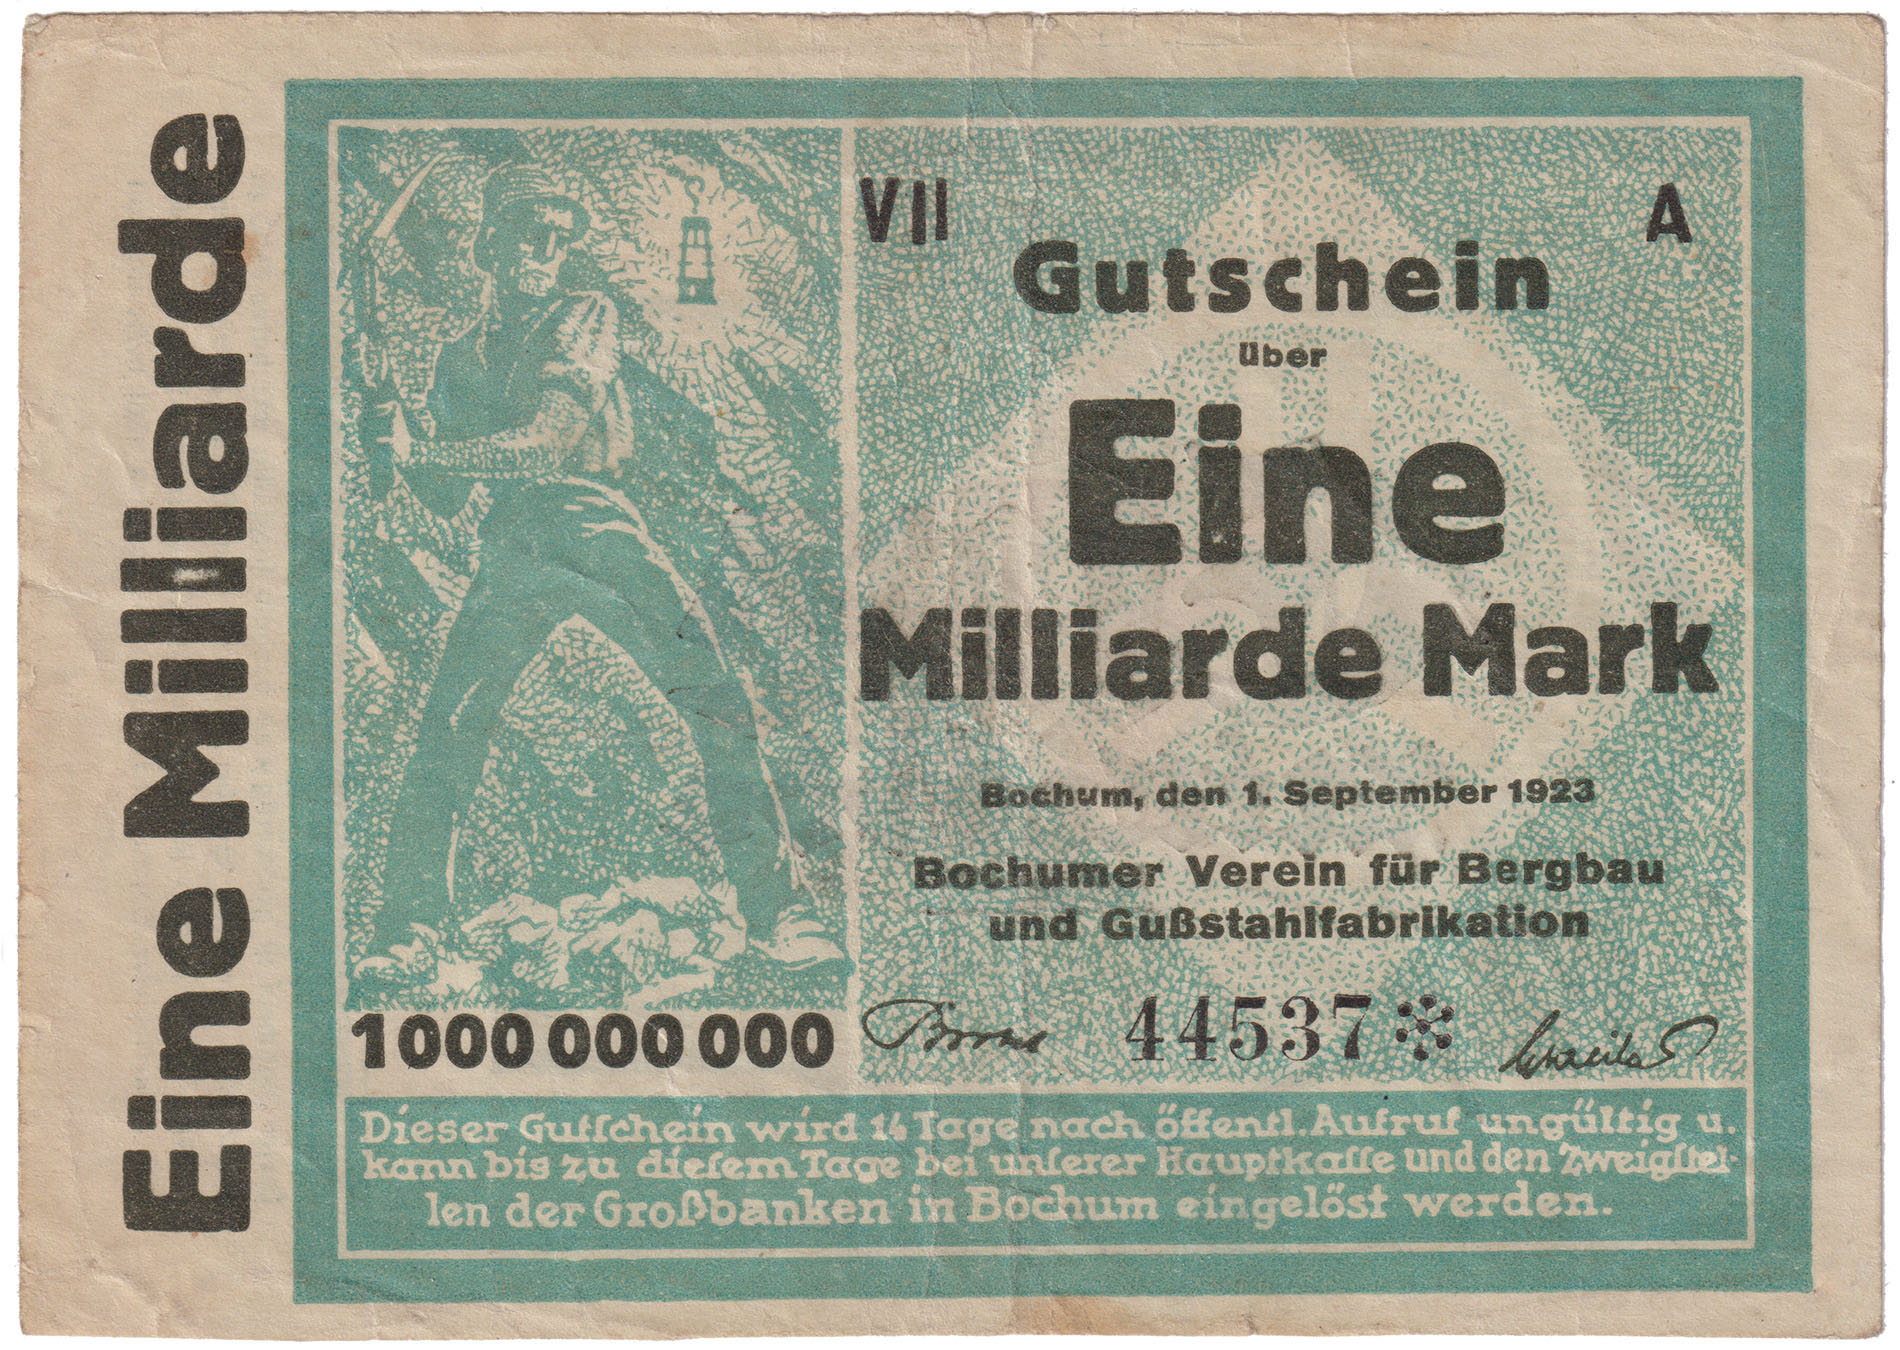 Gutschein über Eine Milliarde Mark Bochumer Verein und Gussstahlfabrikation vom September 1923